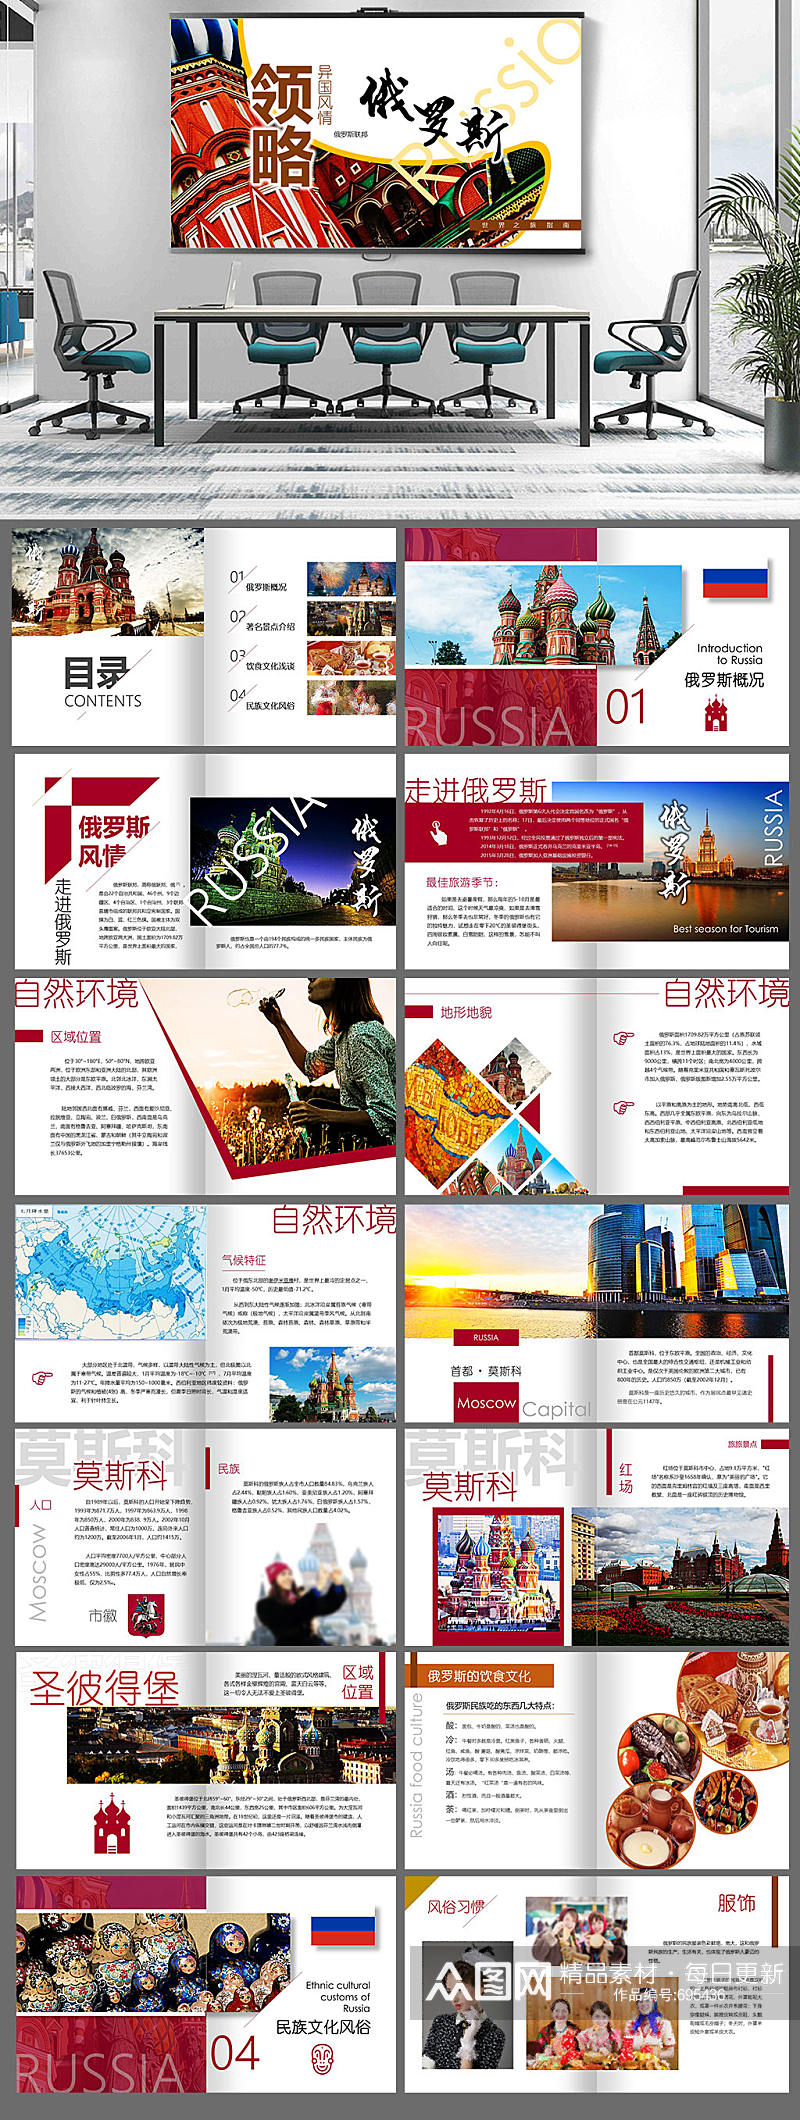 领略俄罗斯异国风情旅游指南介绍画册素材